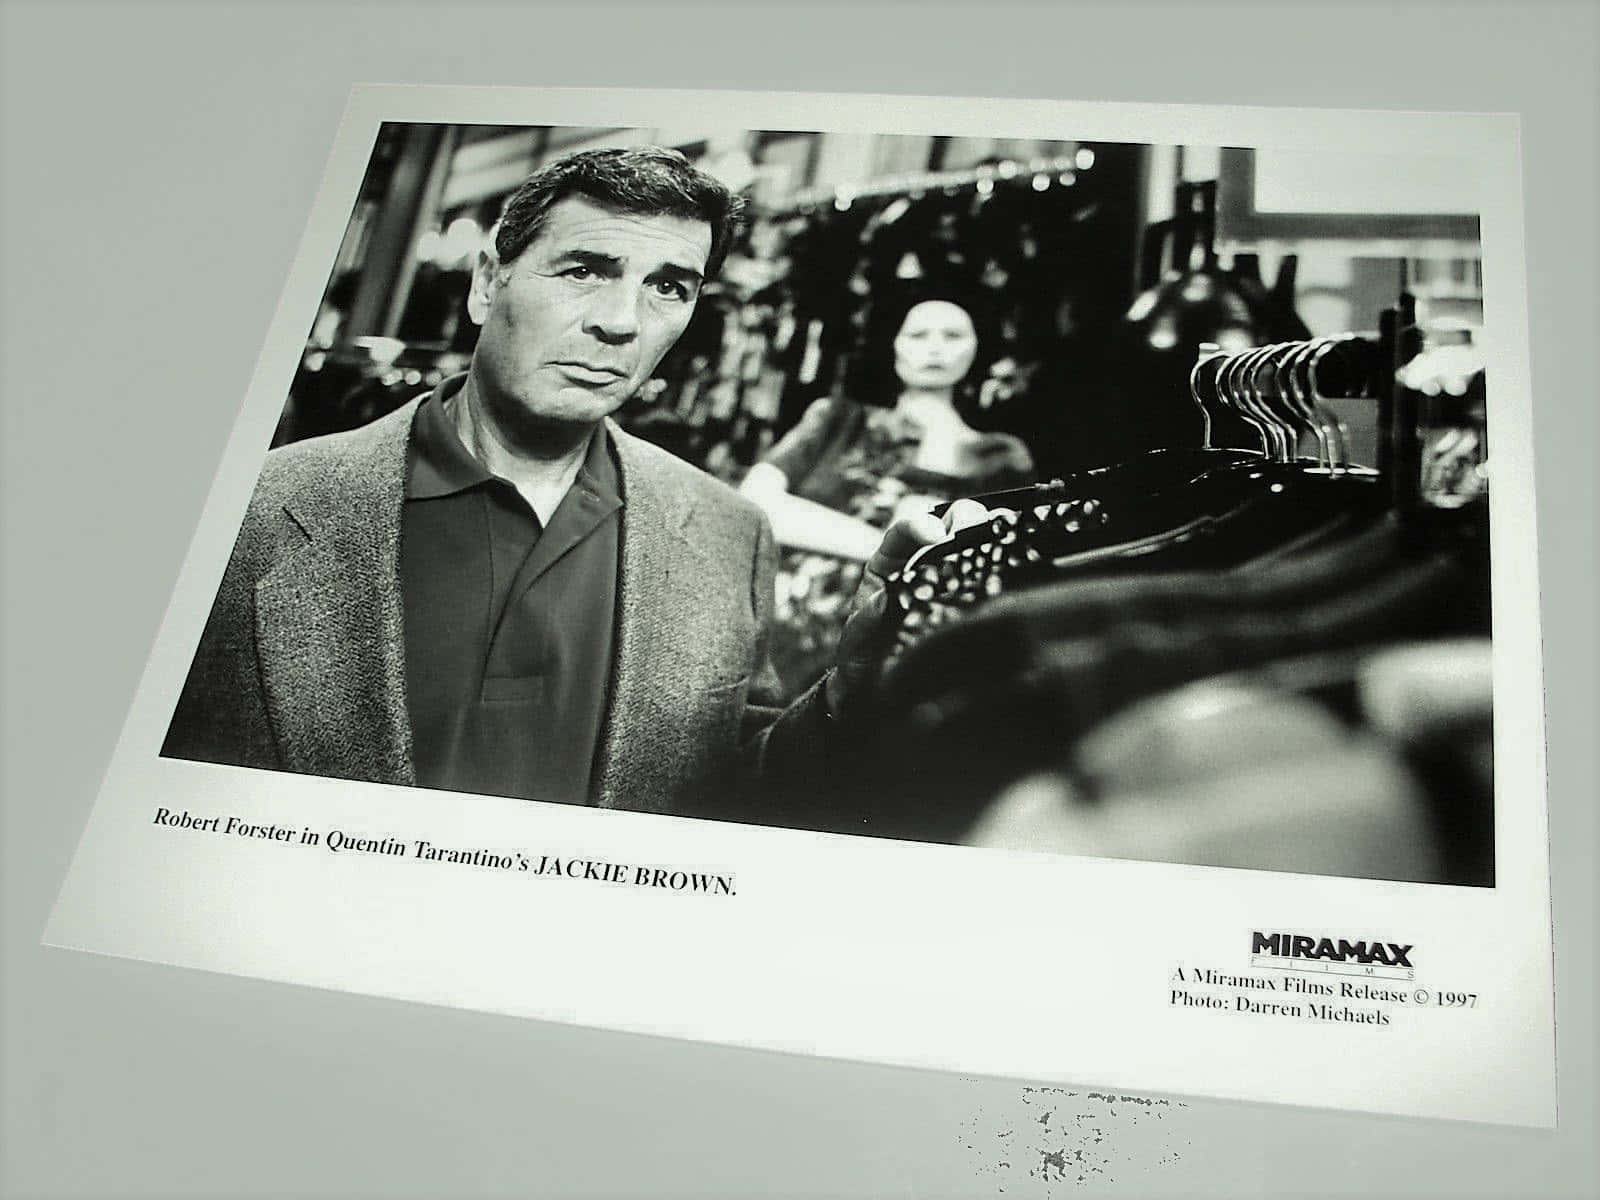 Gammel Memorabilya af skuespilleren Robert Forster tager op på et stensat baggrund. Wallpaper